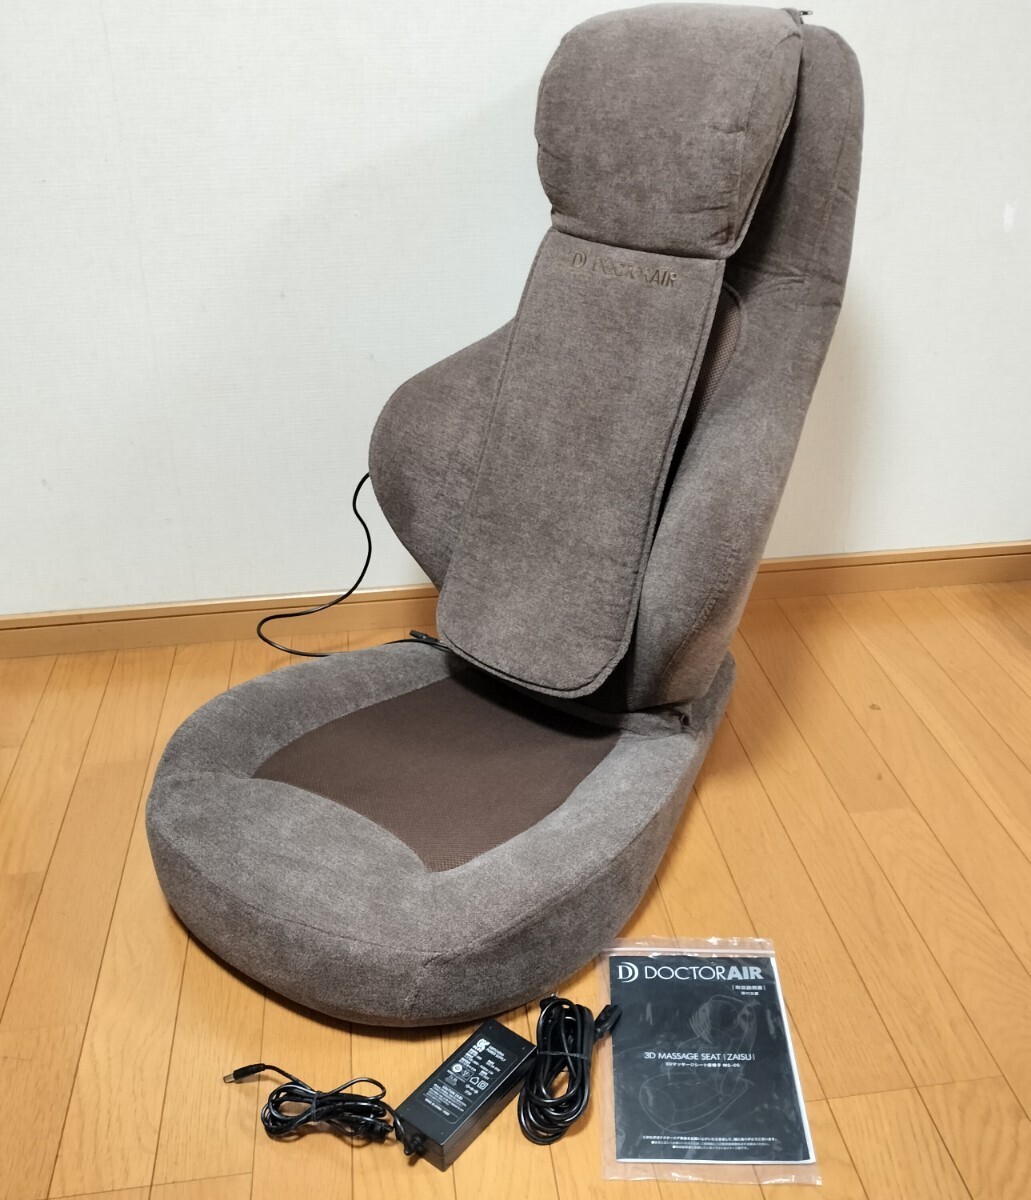 ドクターエア 3D マッサージシート 座椅子 MS-05 ブラウン/リクライニング 首 肩 背中 腰 (マッサージチェア マッサージ機)の画像1